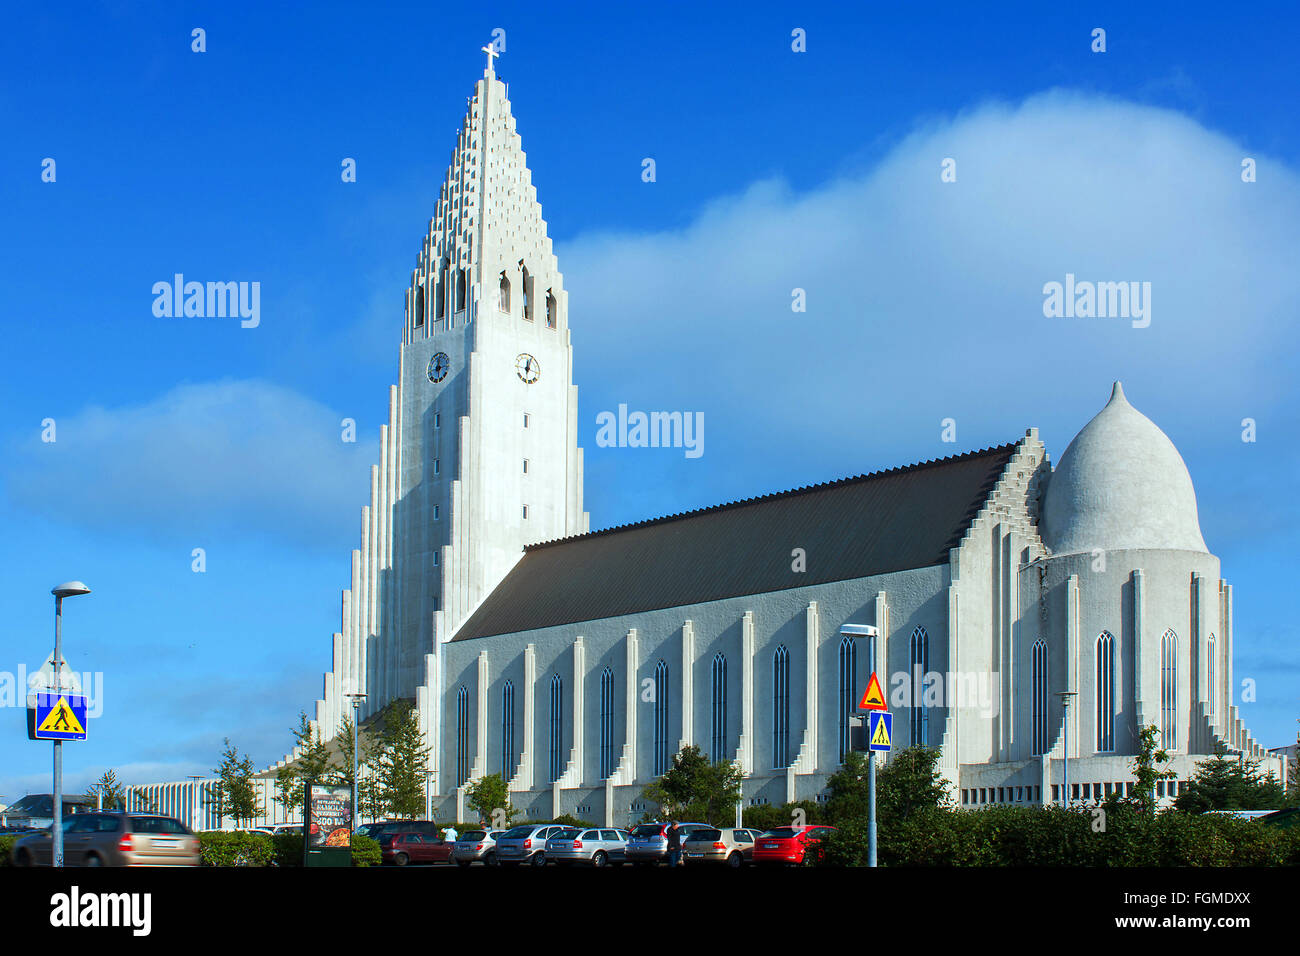 L'Arctique au centre-ville de Reykjavik Islande Hallgrimskirkja église avec clocher de l'Église Hallgrim Banque D'Images